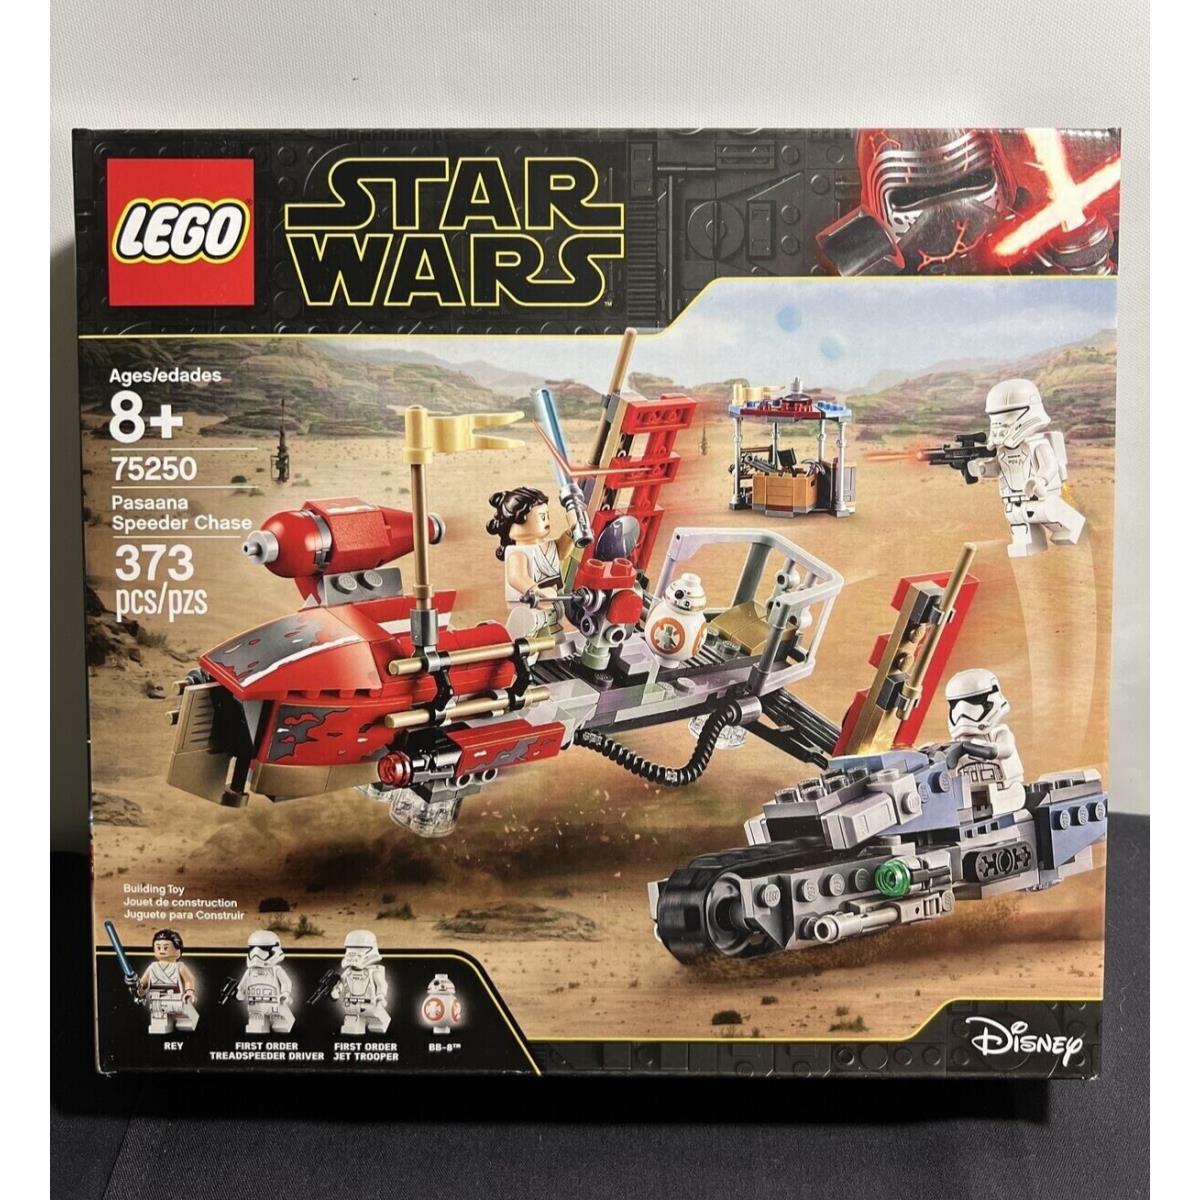 Lego Star Wars Set 75250 Pasaana Speeder Chase w/ 4 Minifigures Rey BB-8